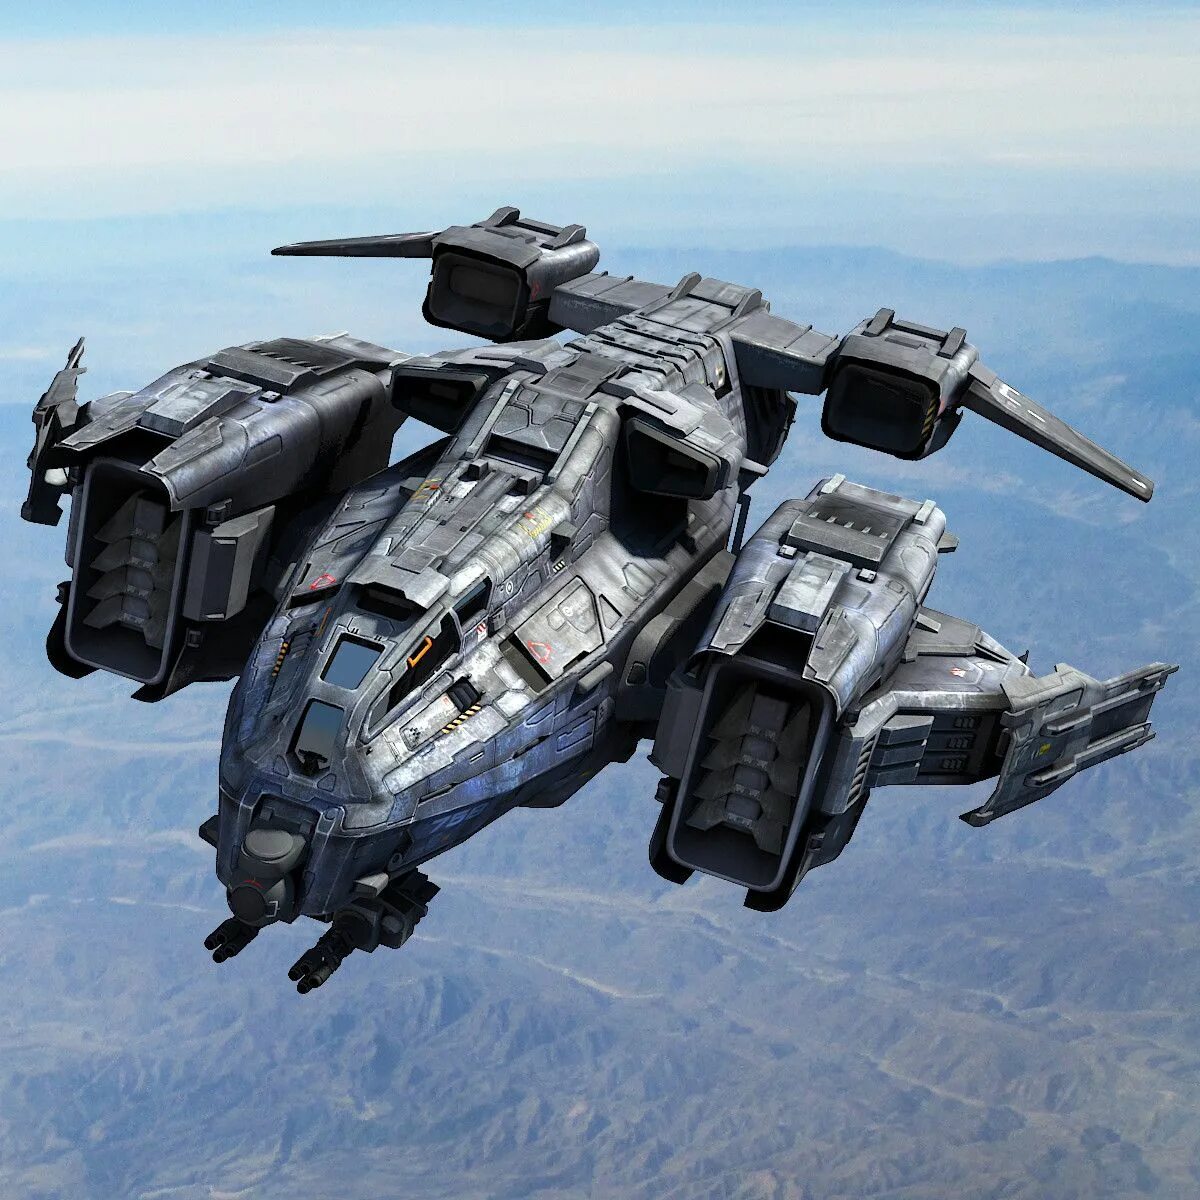 Космическая техника будущего. Sci-Fi dropship 3d model. Стелс шаттл концепт. Sci-Fi военный транспортник. Dropship концепт.